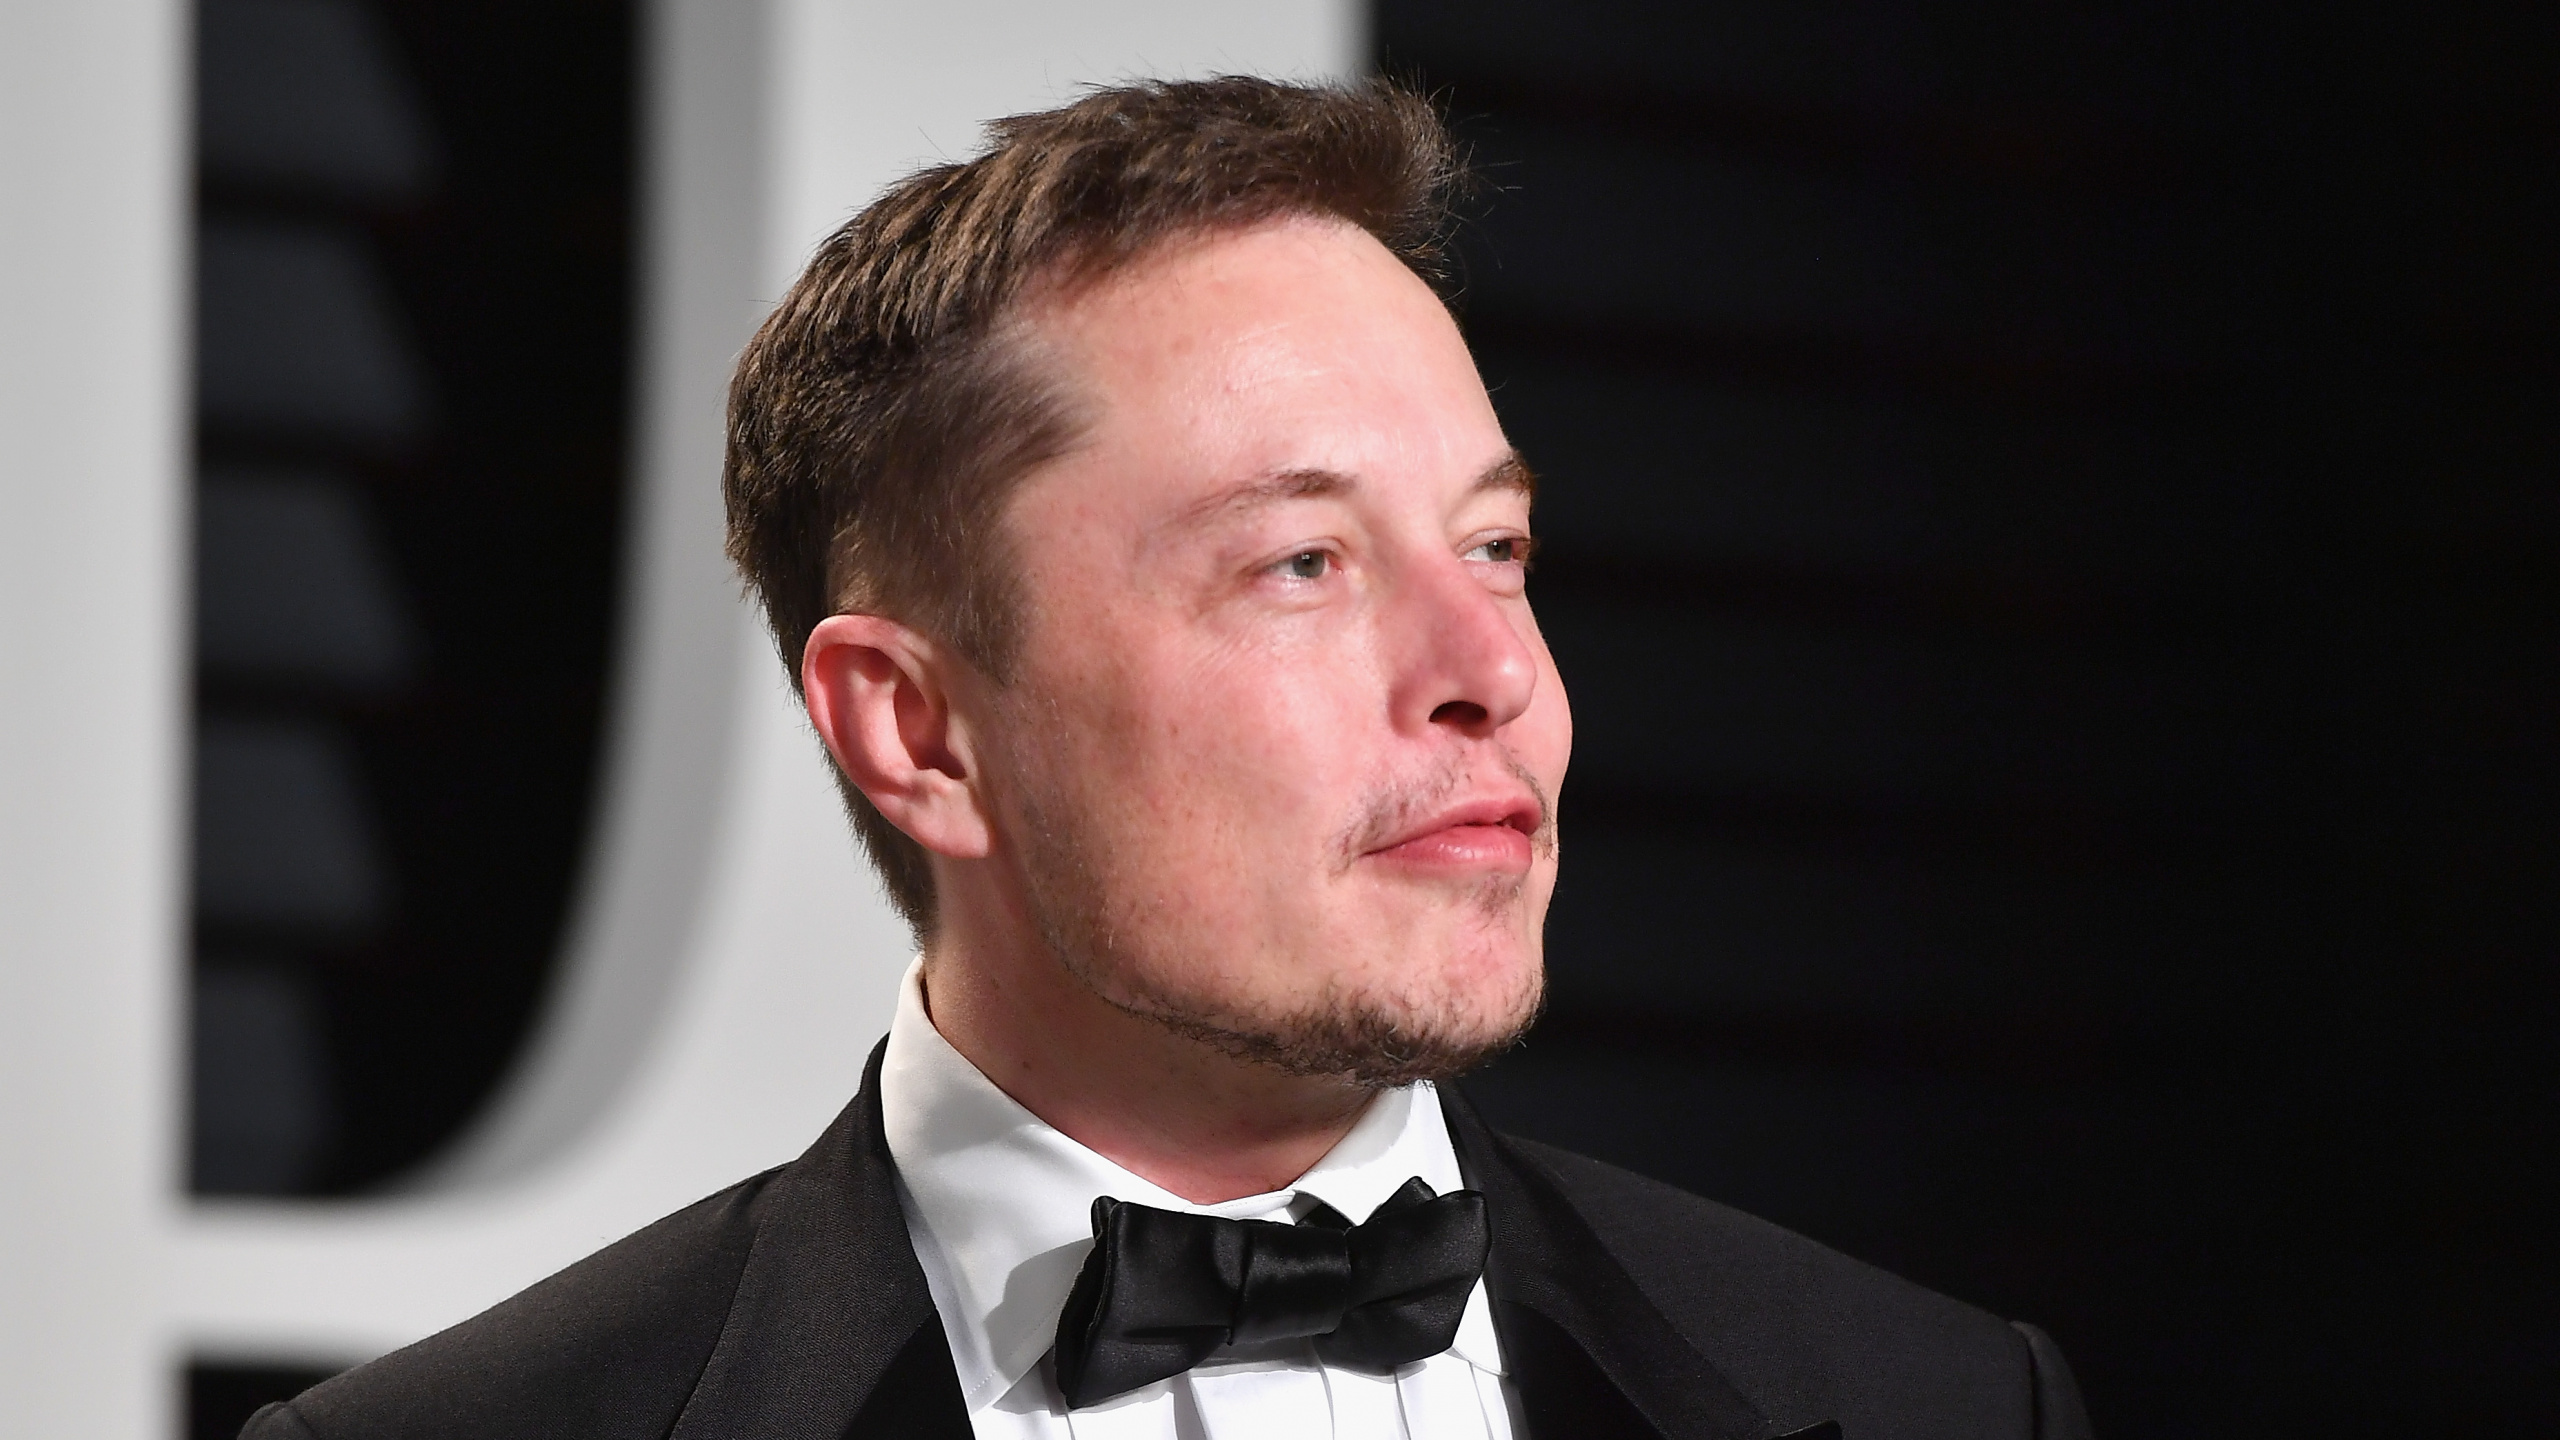 Elon Musk, Tesla Model 3, Usure Formelle, Tuxedo, Entrepreneur. Wallpaper in 2560x1440 Resolution